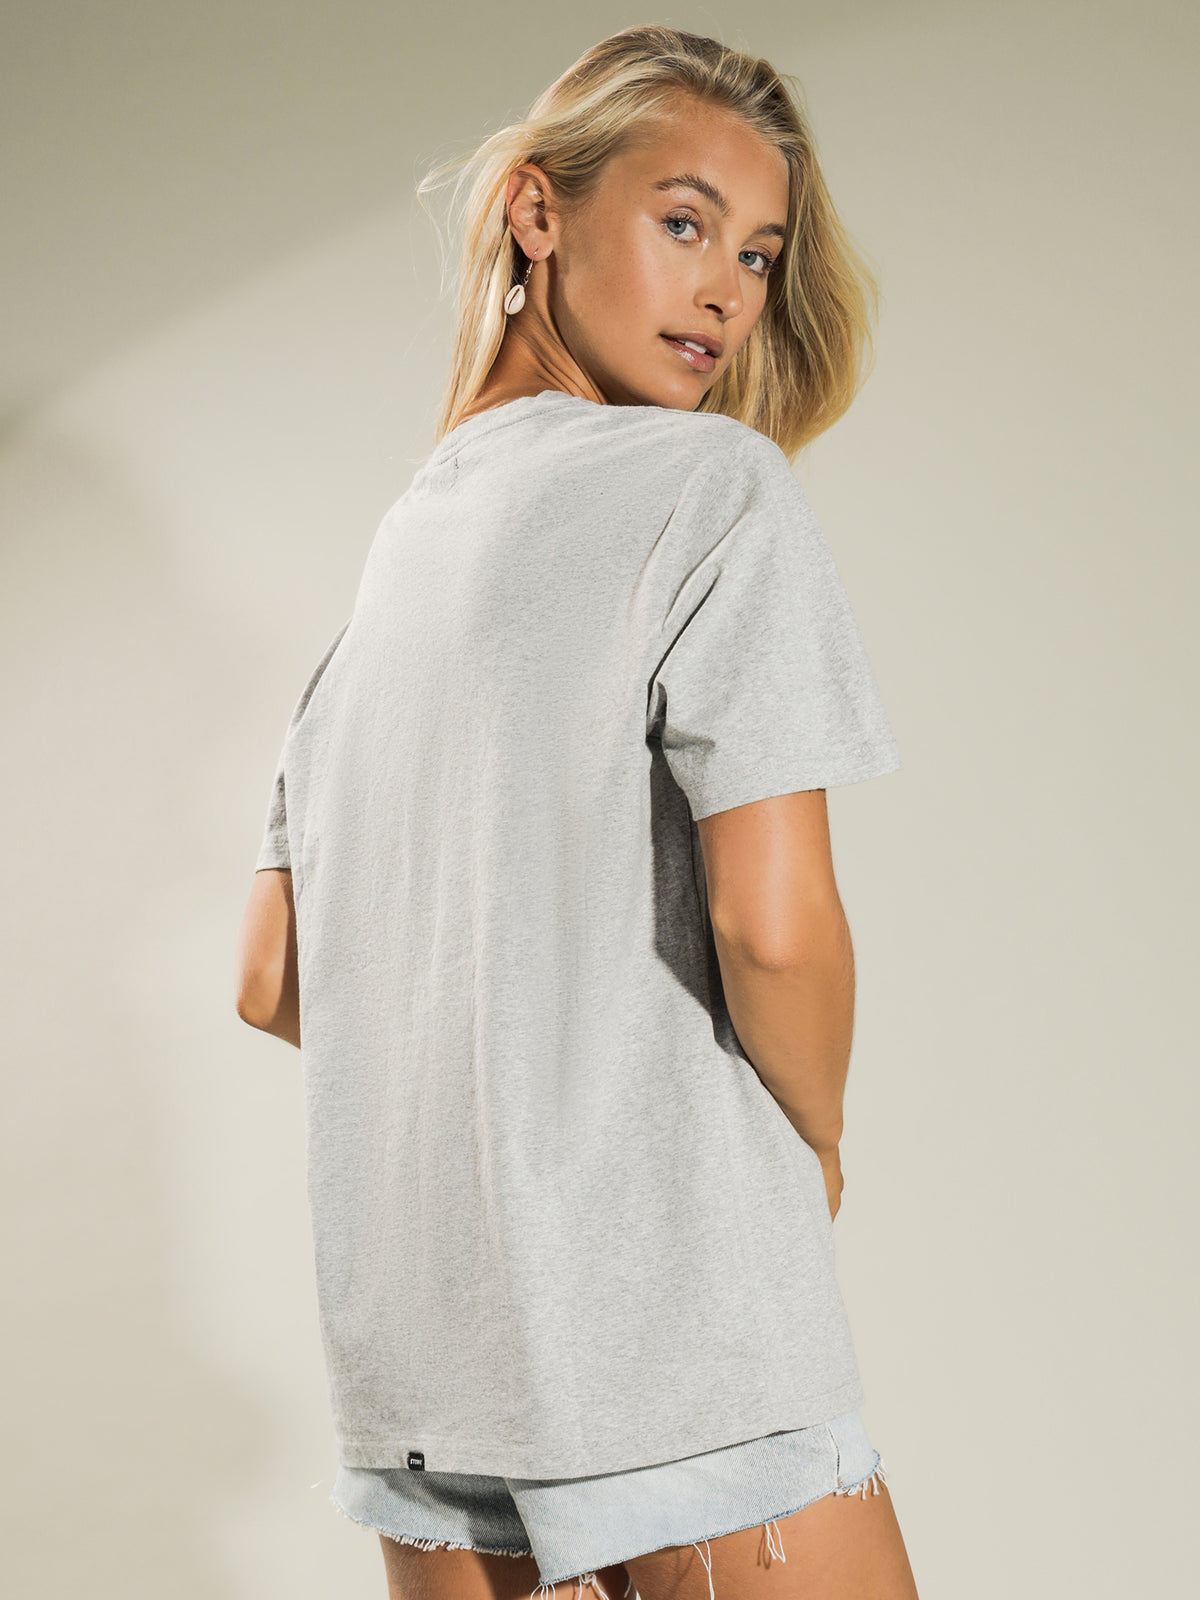 The Talla Merch T-Shirt in Grey Marle